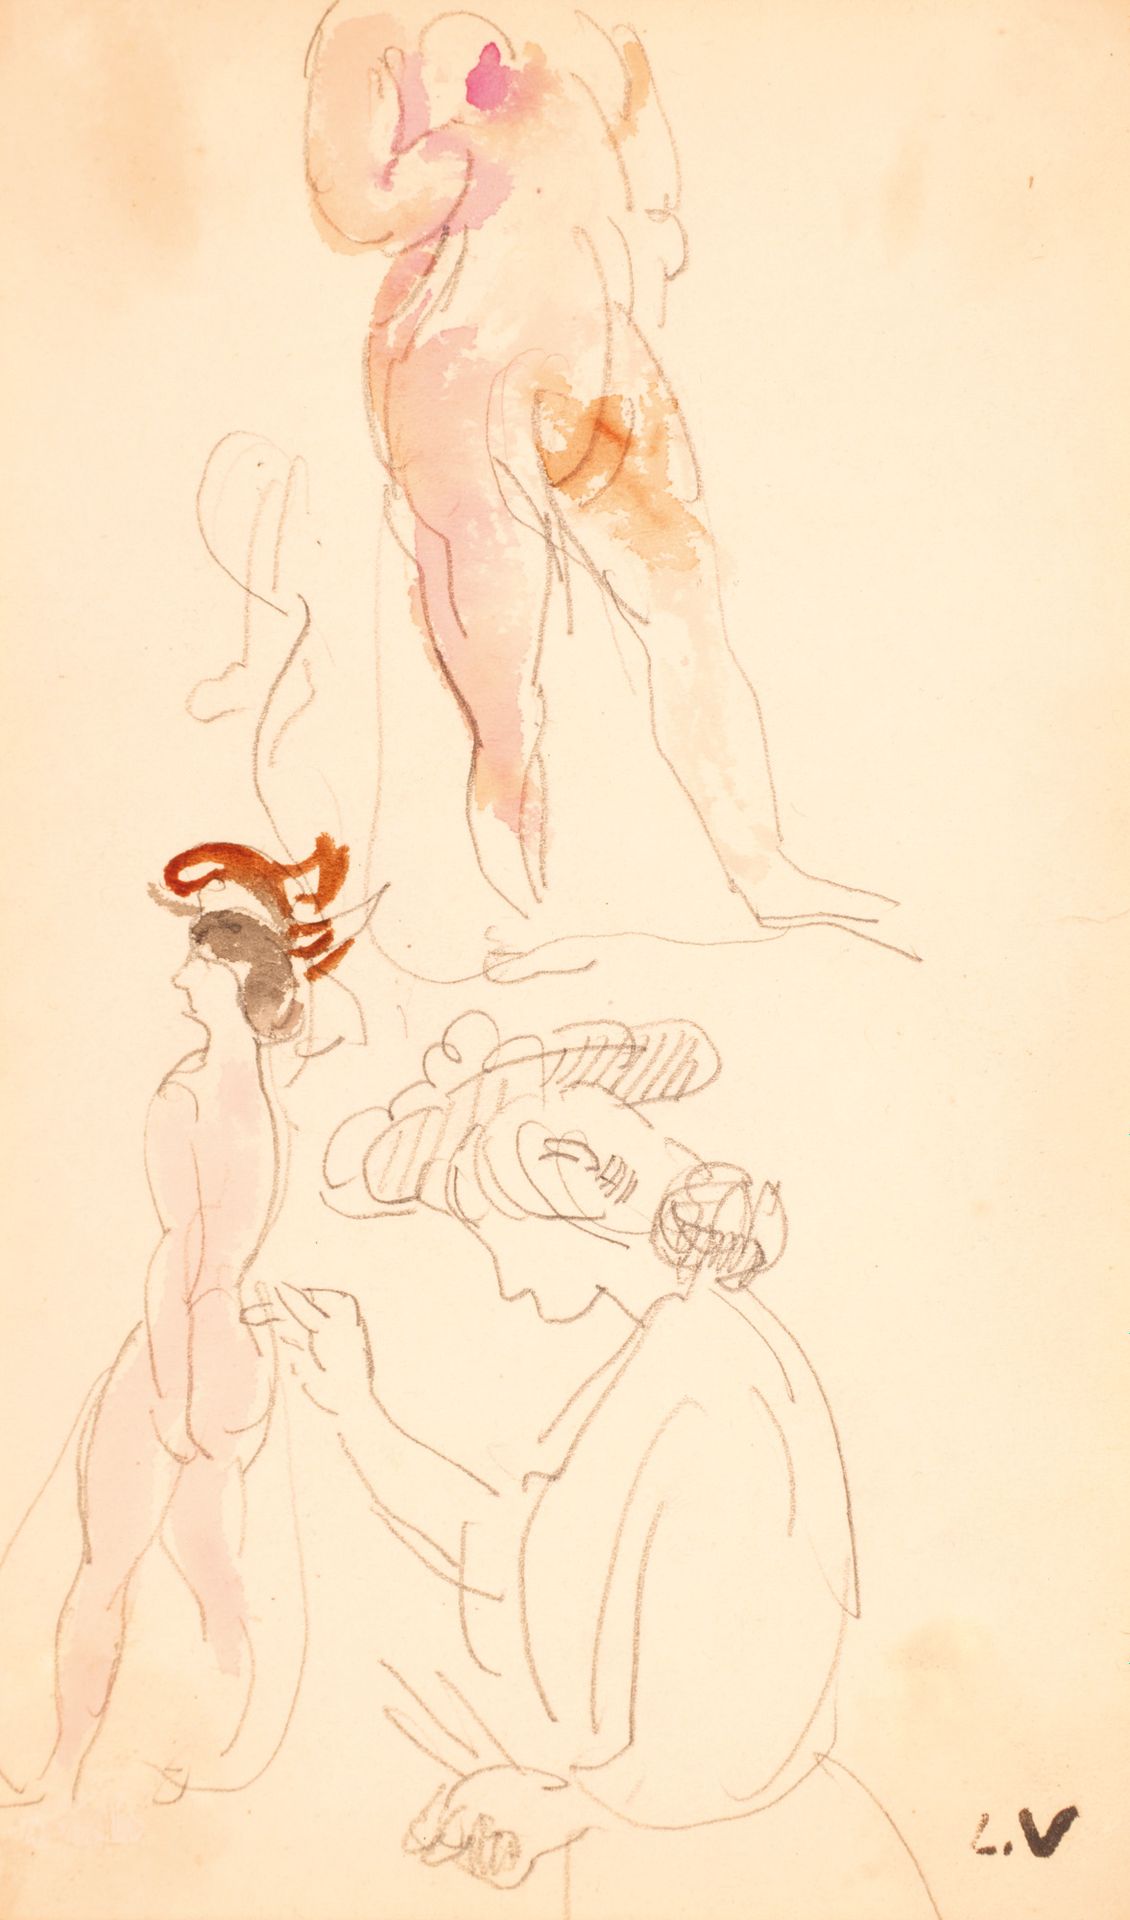 Louis VALTAT (1869-1952) 路易斯-瓦尔塔 (1869-1952)

对两个女人和一个男人的研究。

铅笔和水彩画，右下角盖有单字。

1&hellip;